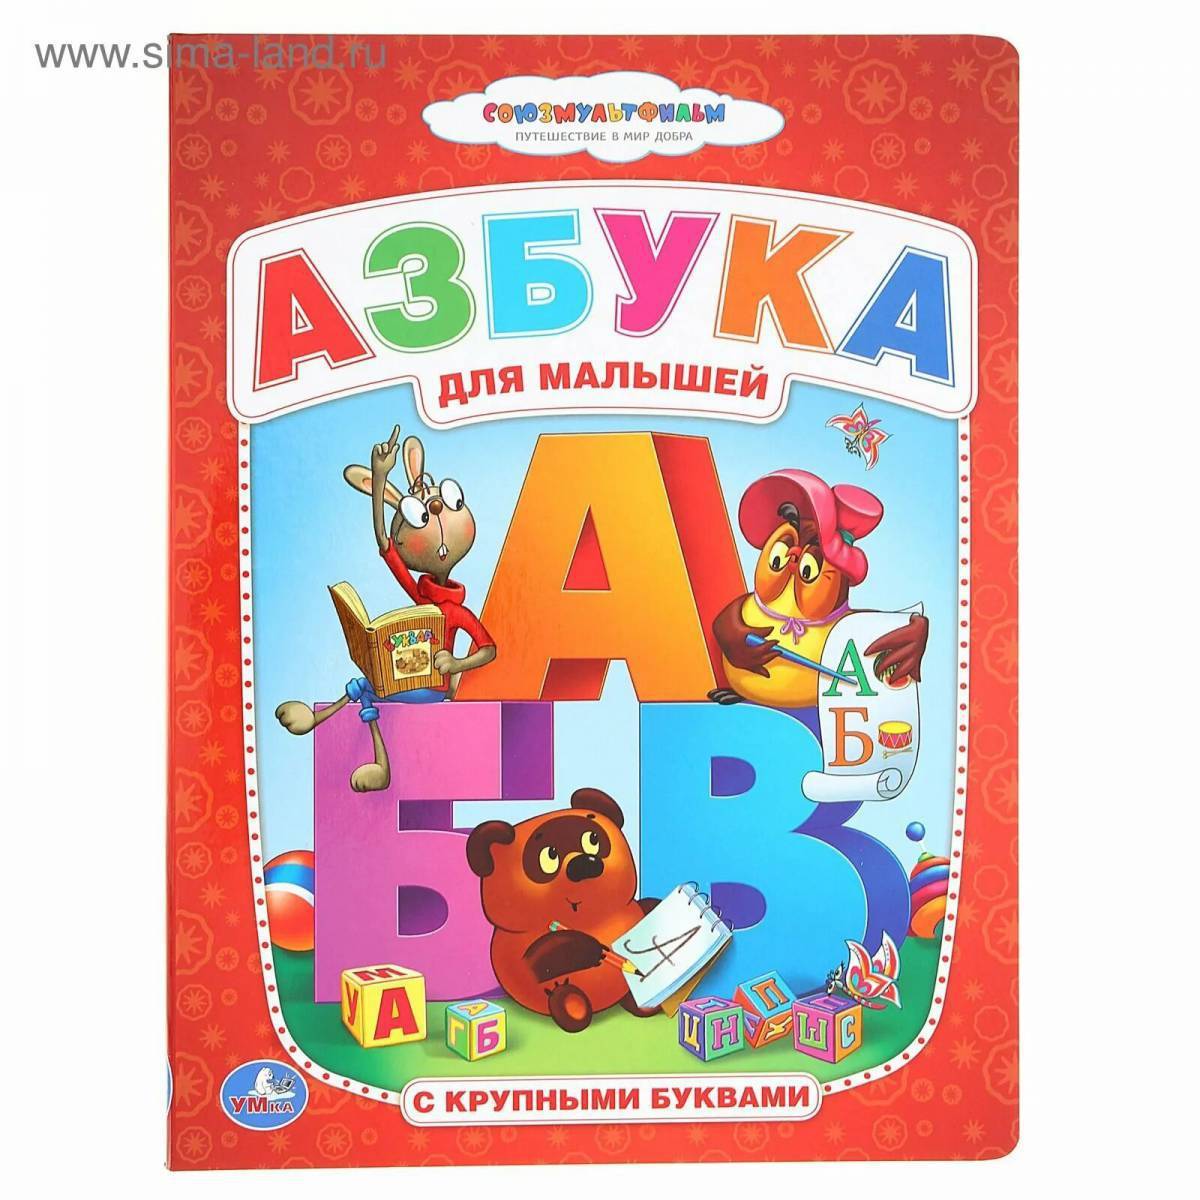 Азбука партизанск. Книжка "Азбука". Азбука для малышей книга. Азбука (обложка). Алфавит книга для детей.